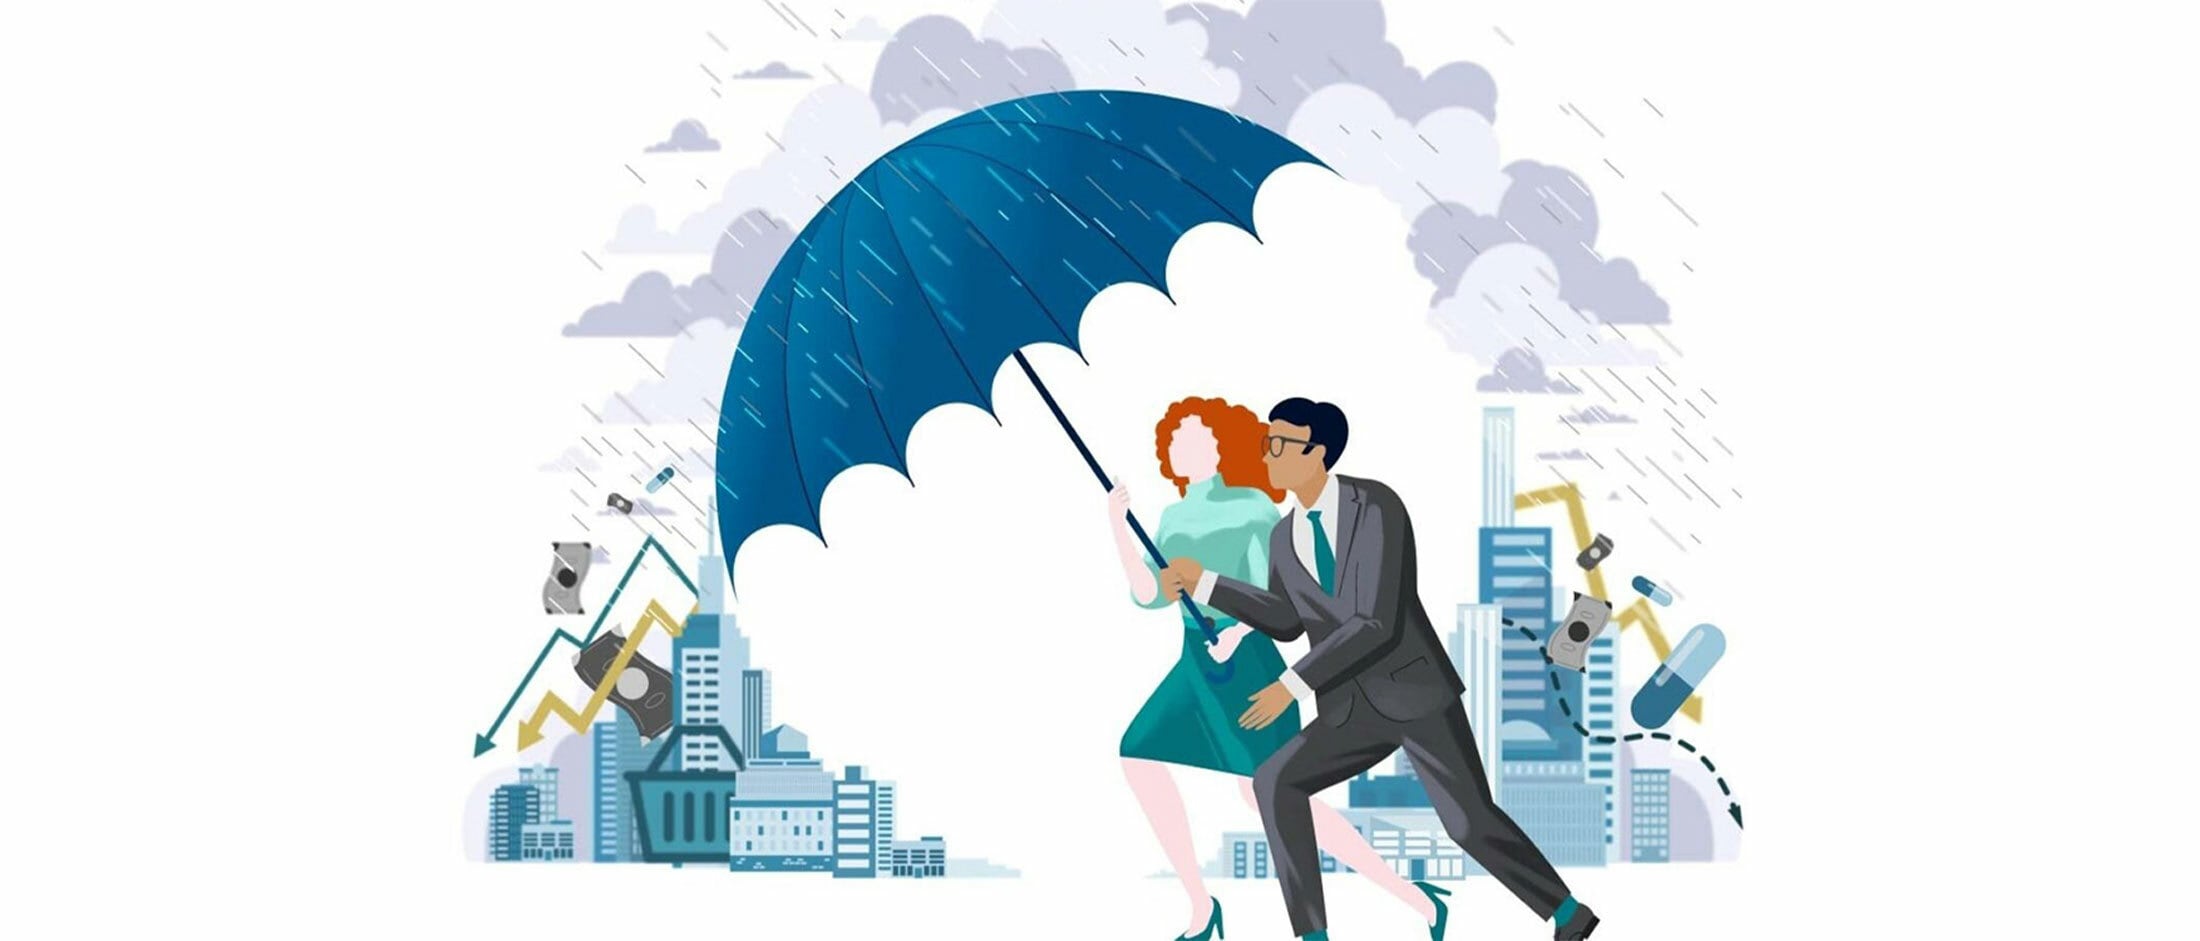 Frau und Mann - Avatare - unter einem grossen blauen Schirm